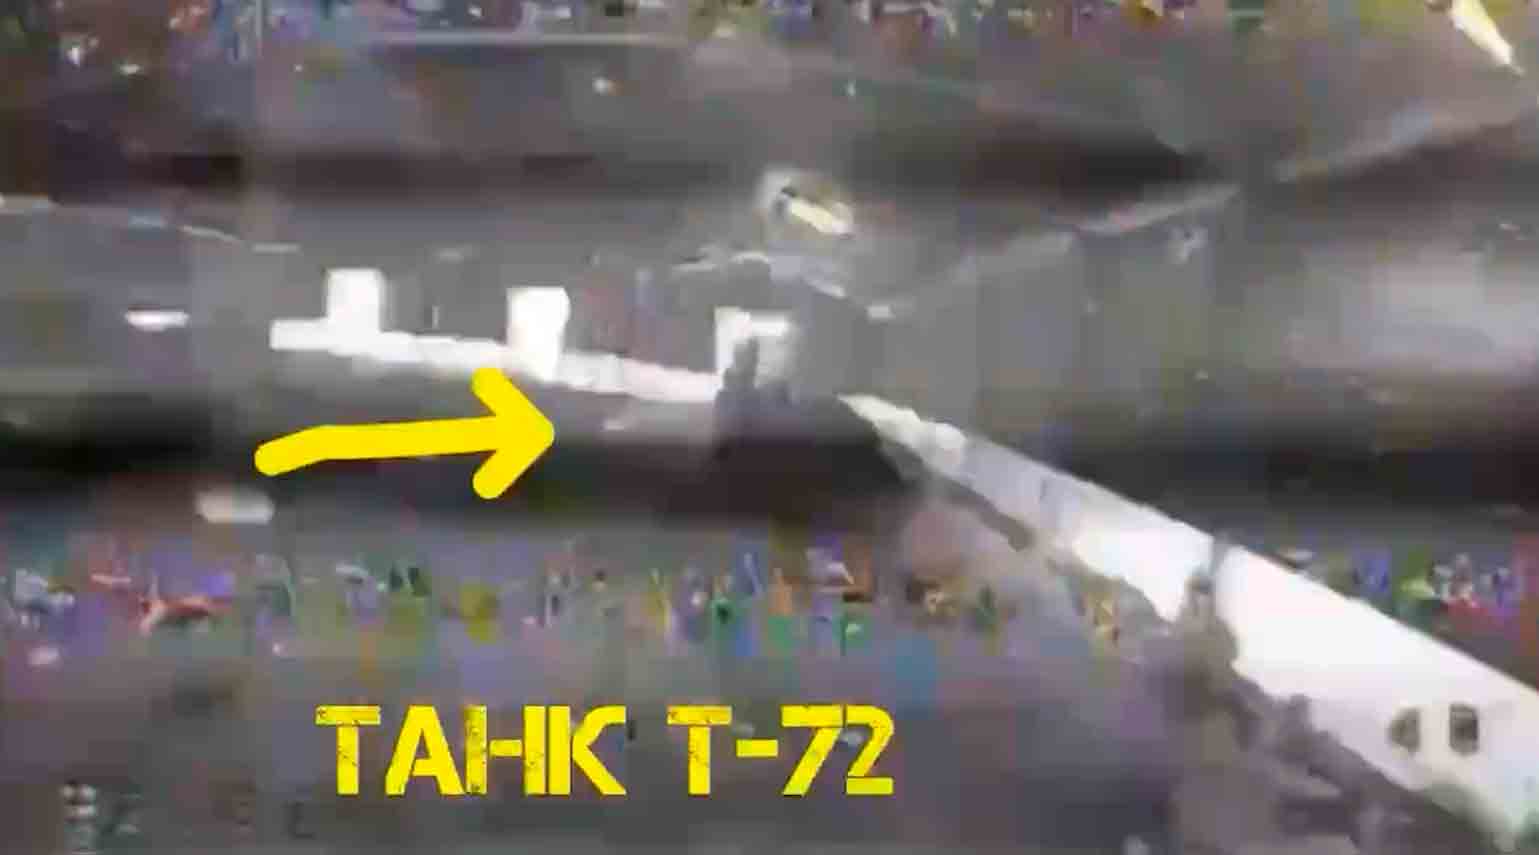 Ukrainske droner ødelægger parkeringsplads med russiske pansrede køretøjer parkeret